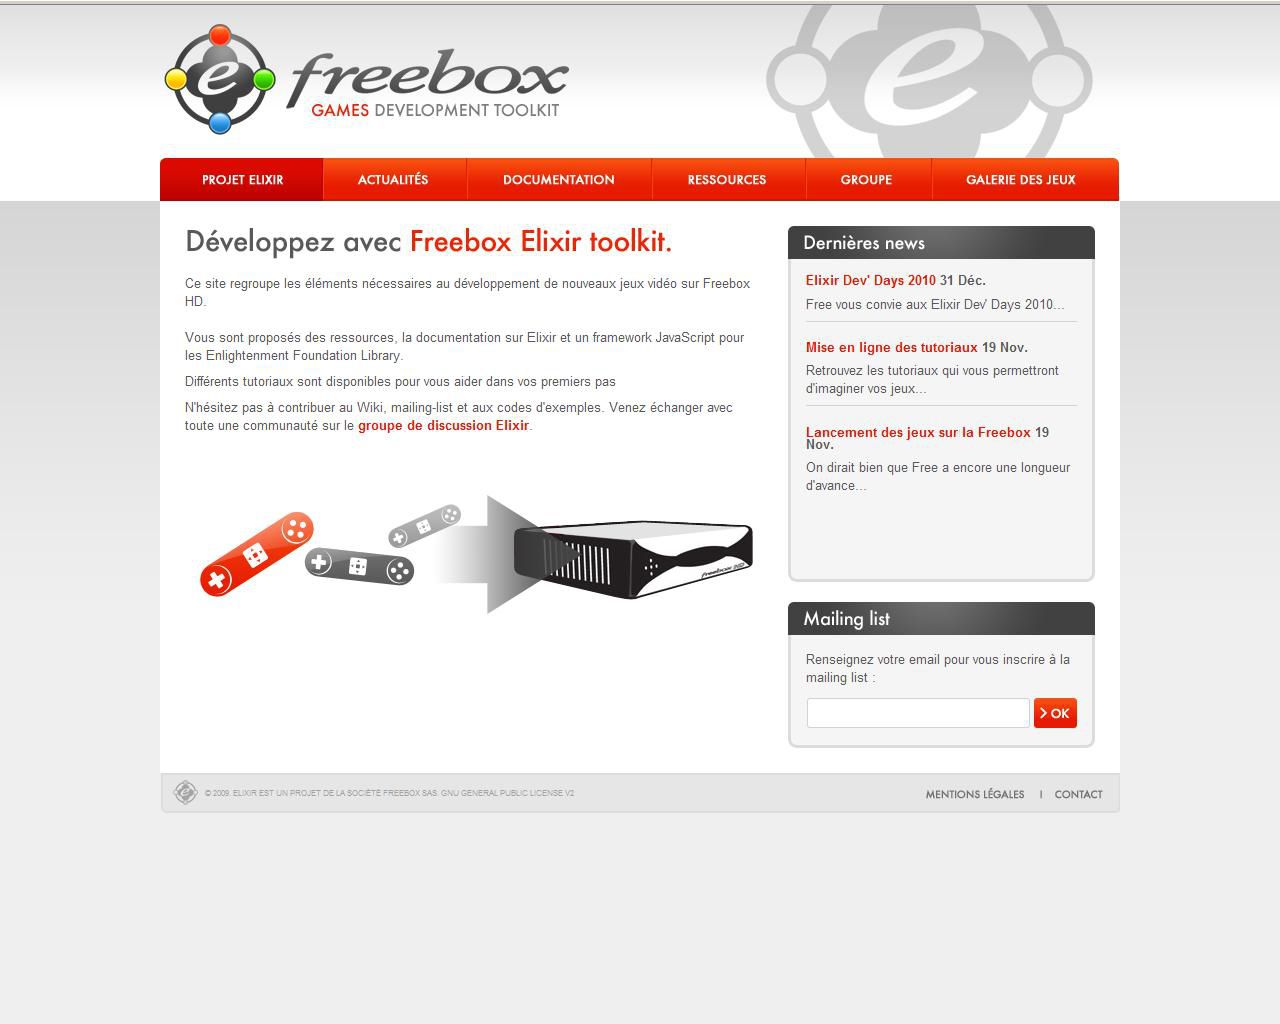 Freebox Elixir